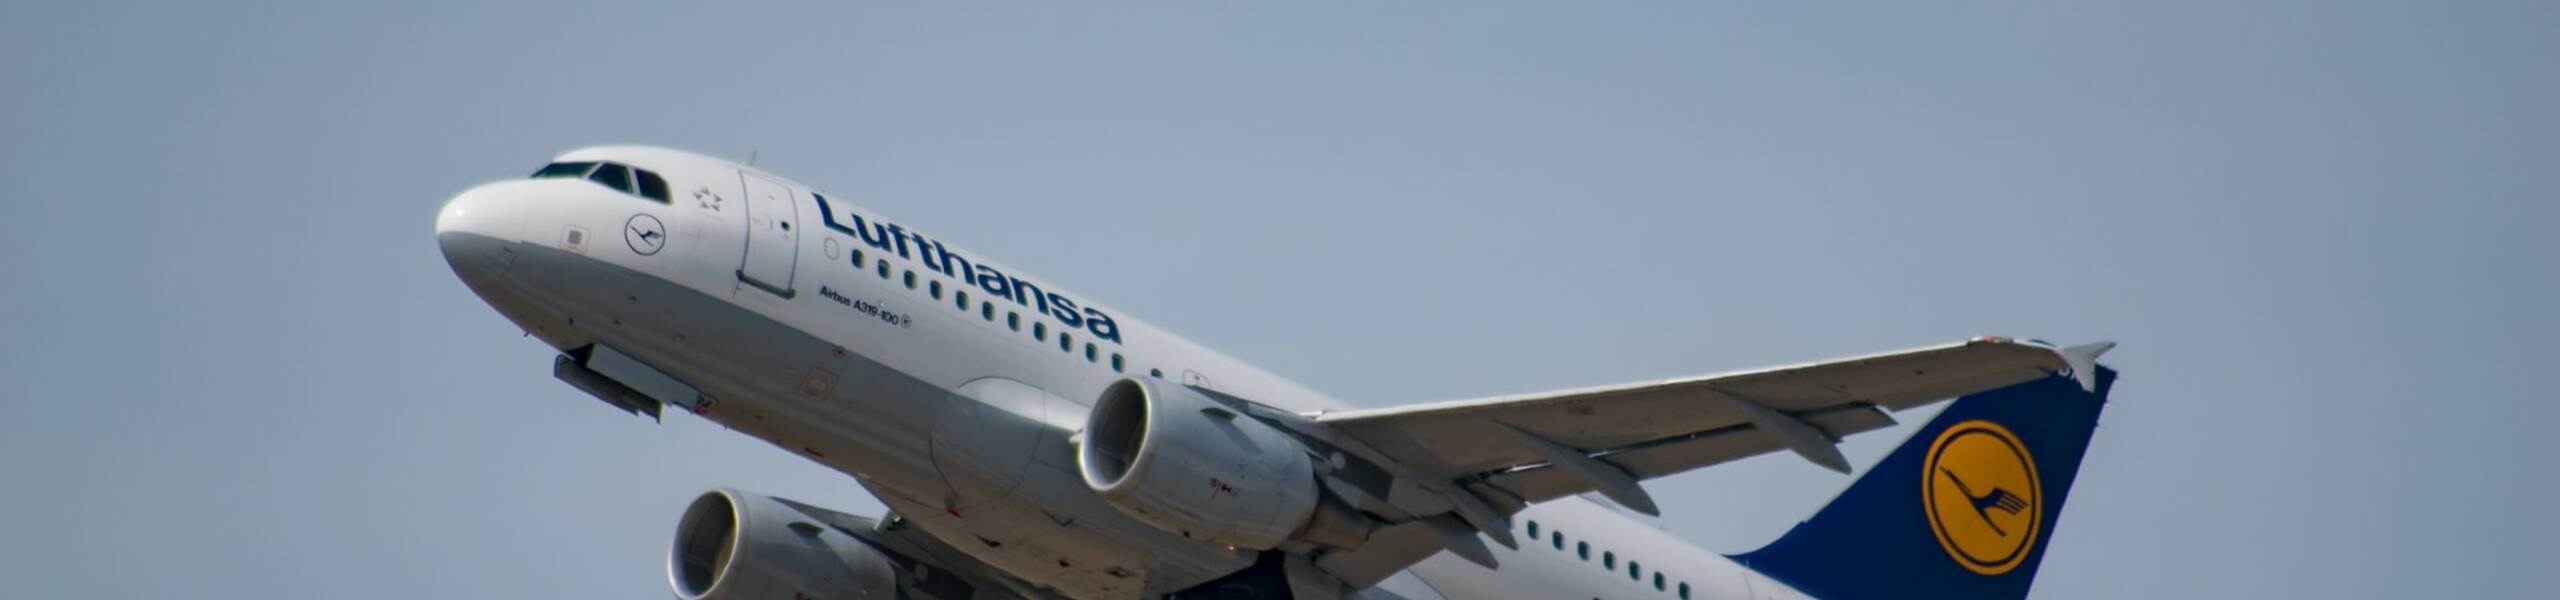 Lufthansa: Saham Jatuh Menjelang Terbitan Tambahan